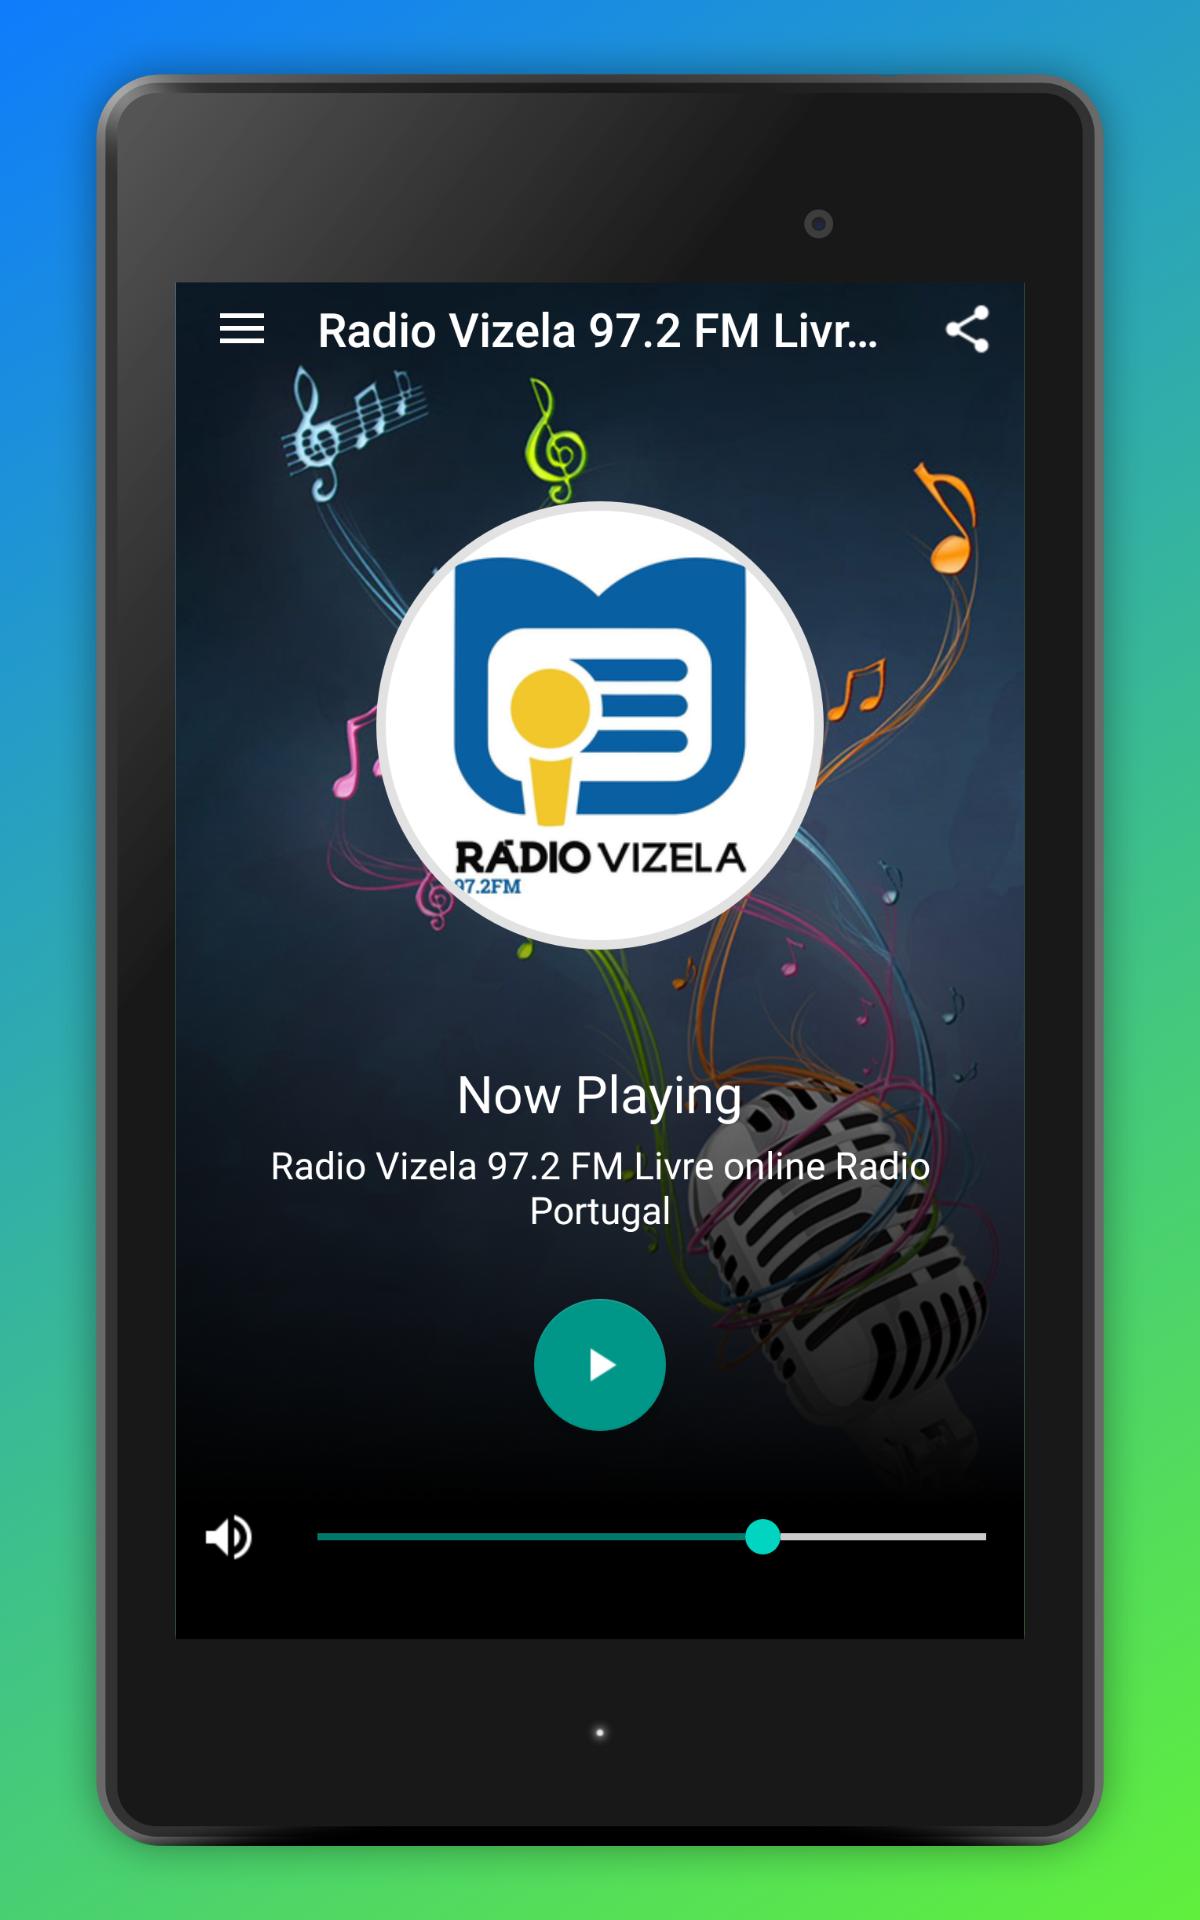 Radio Vizela 97.2 FM Live App Radio Portugal for Android - APK Download